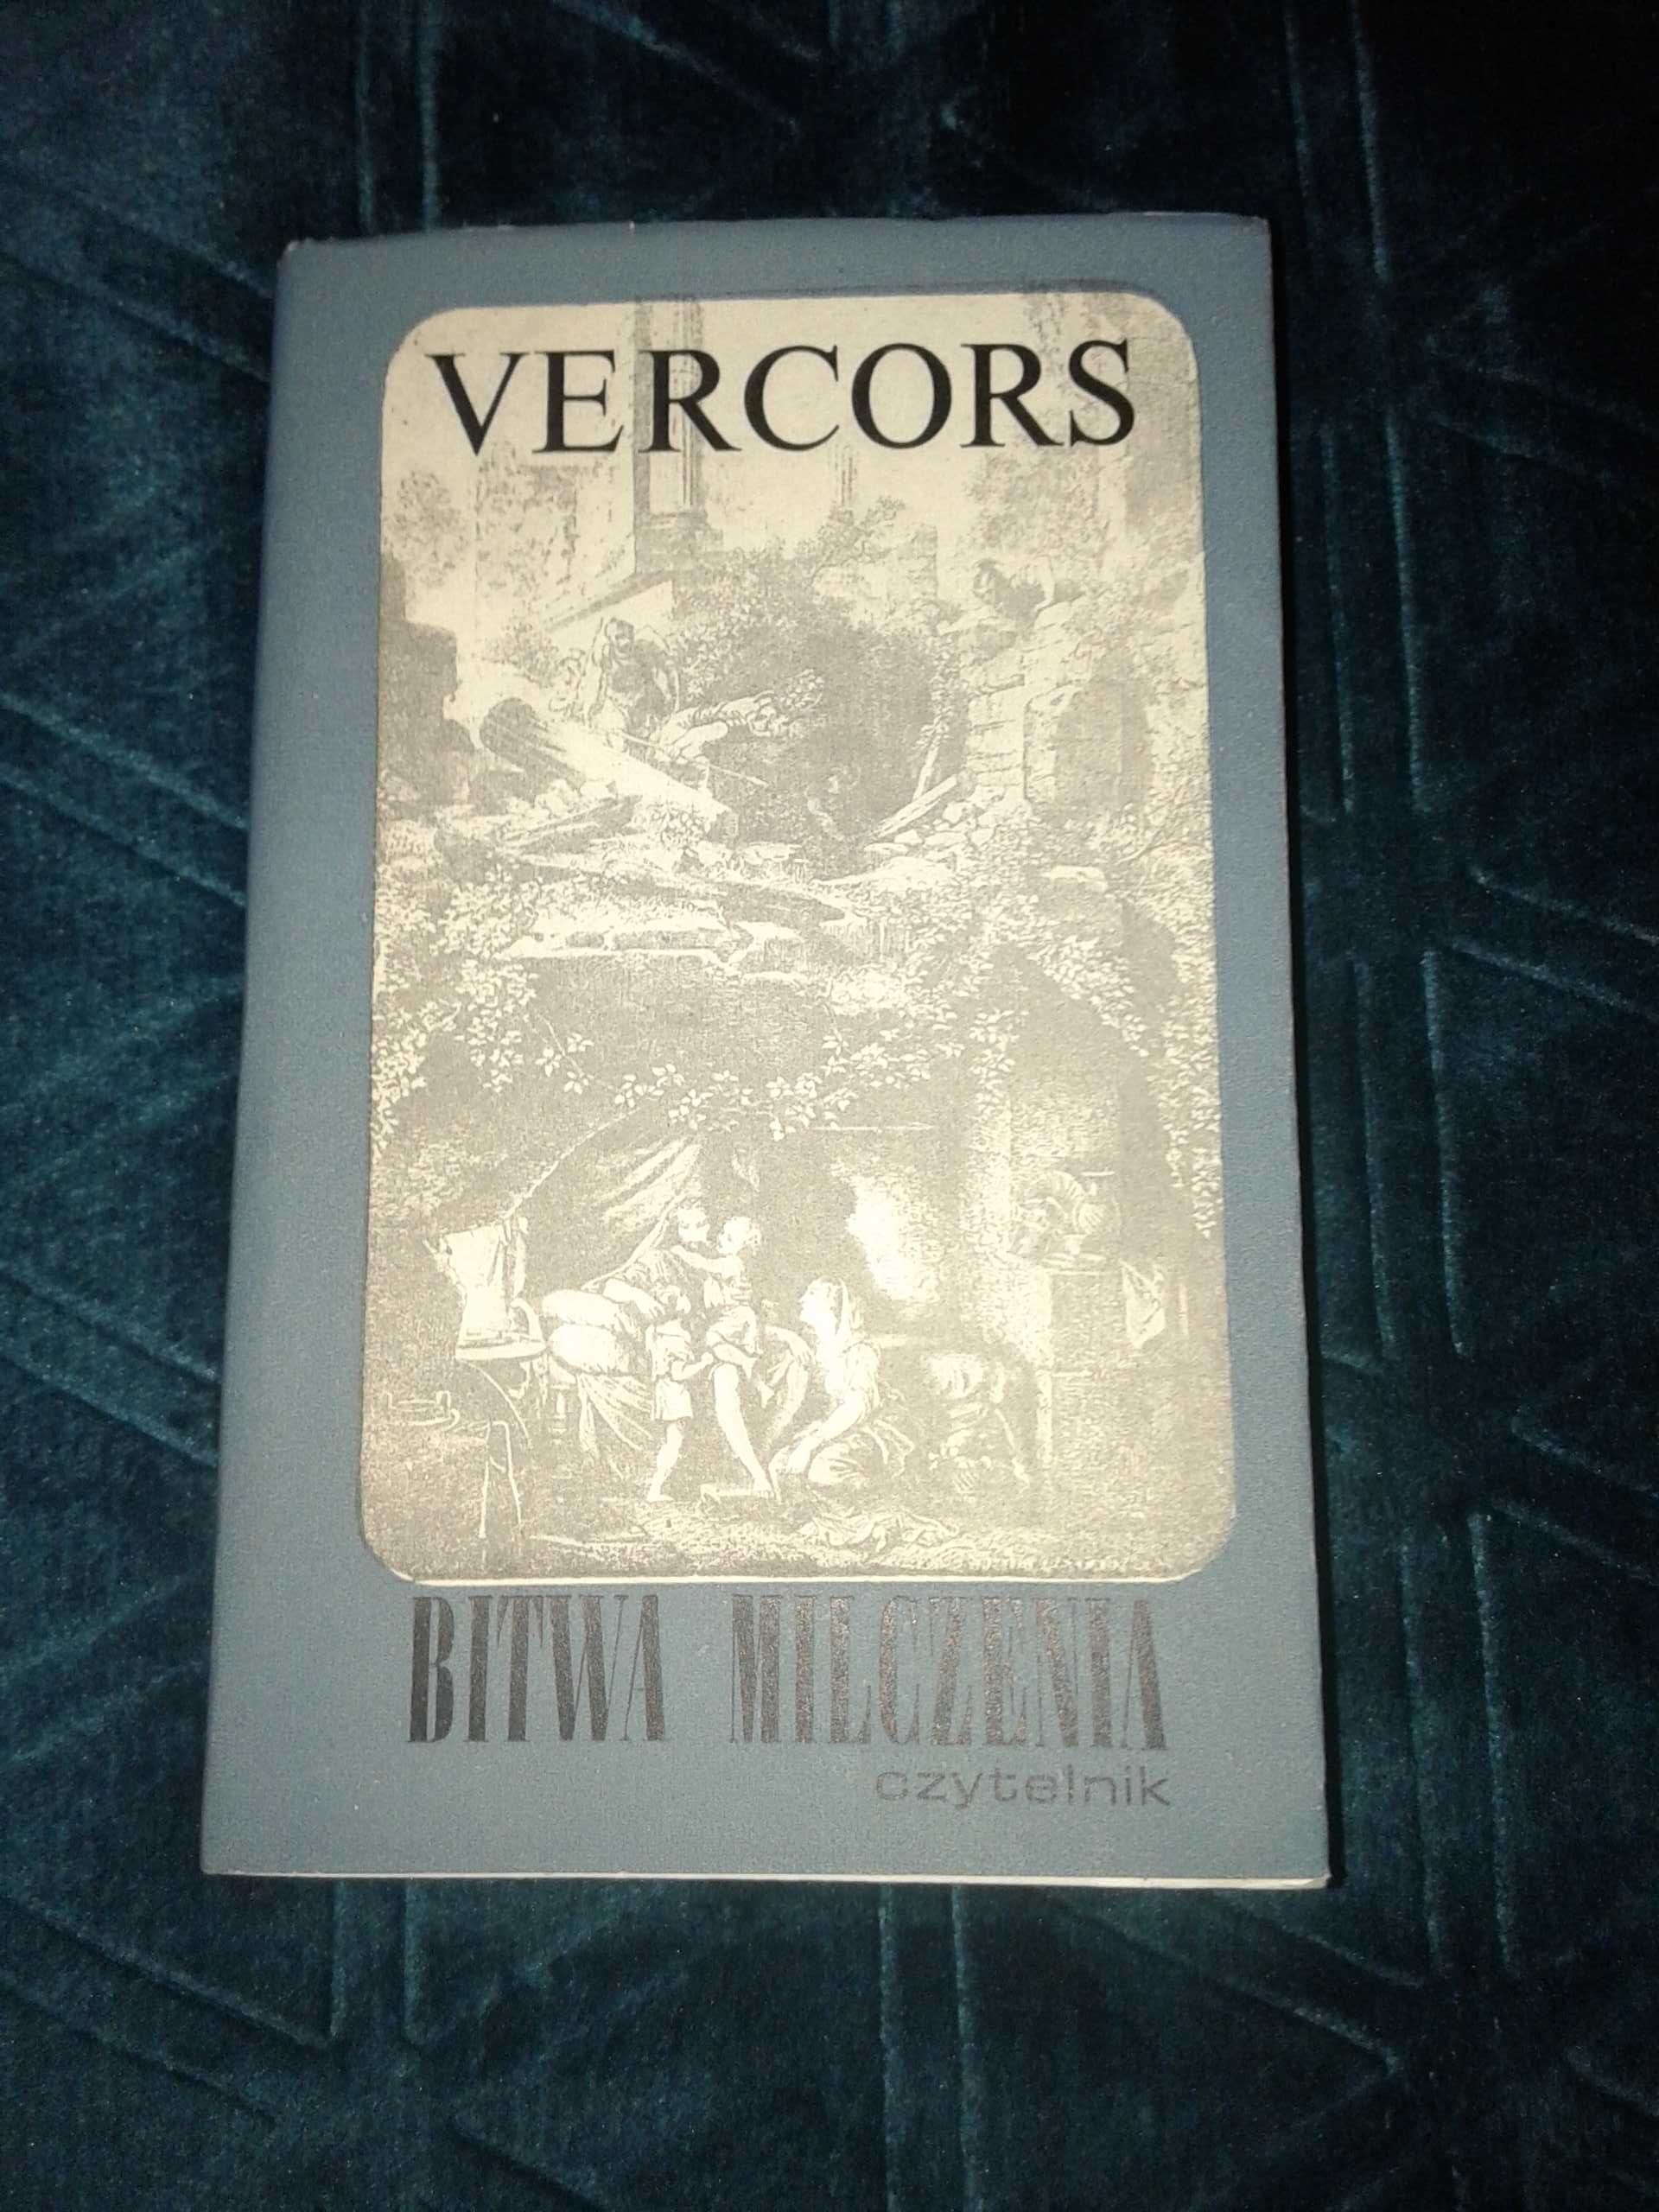 Bitwa milczenia - Vercors